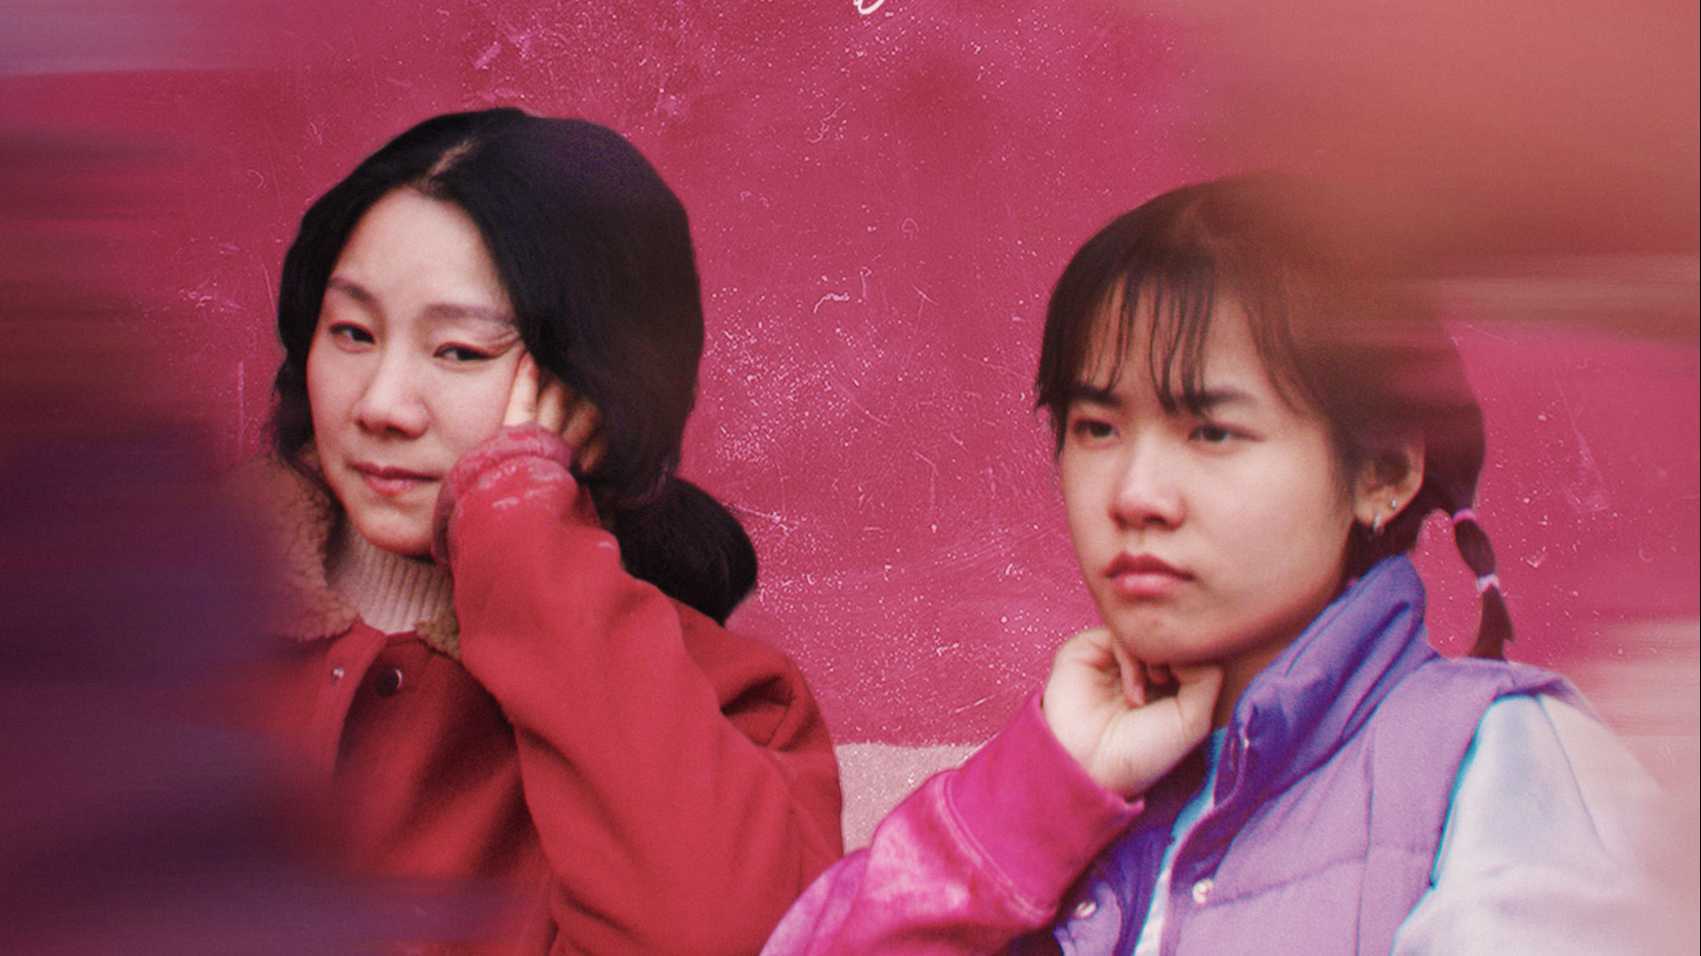 中国传媒大学学生女性题材剧情短片《在路上》预告片